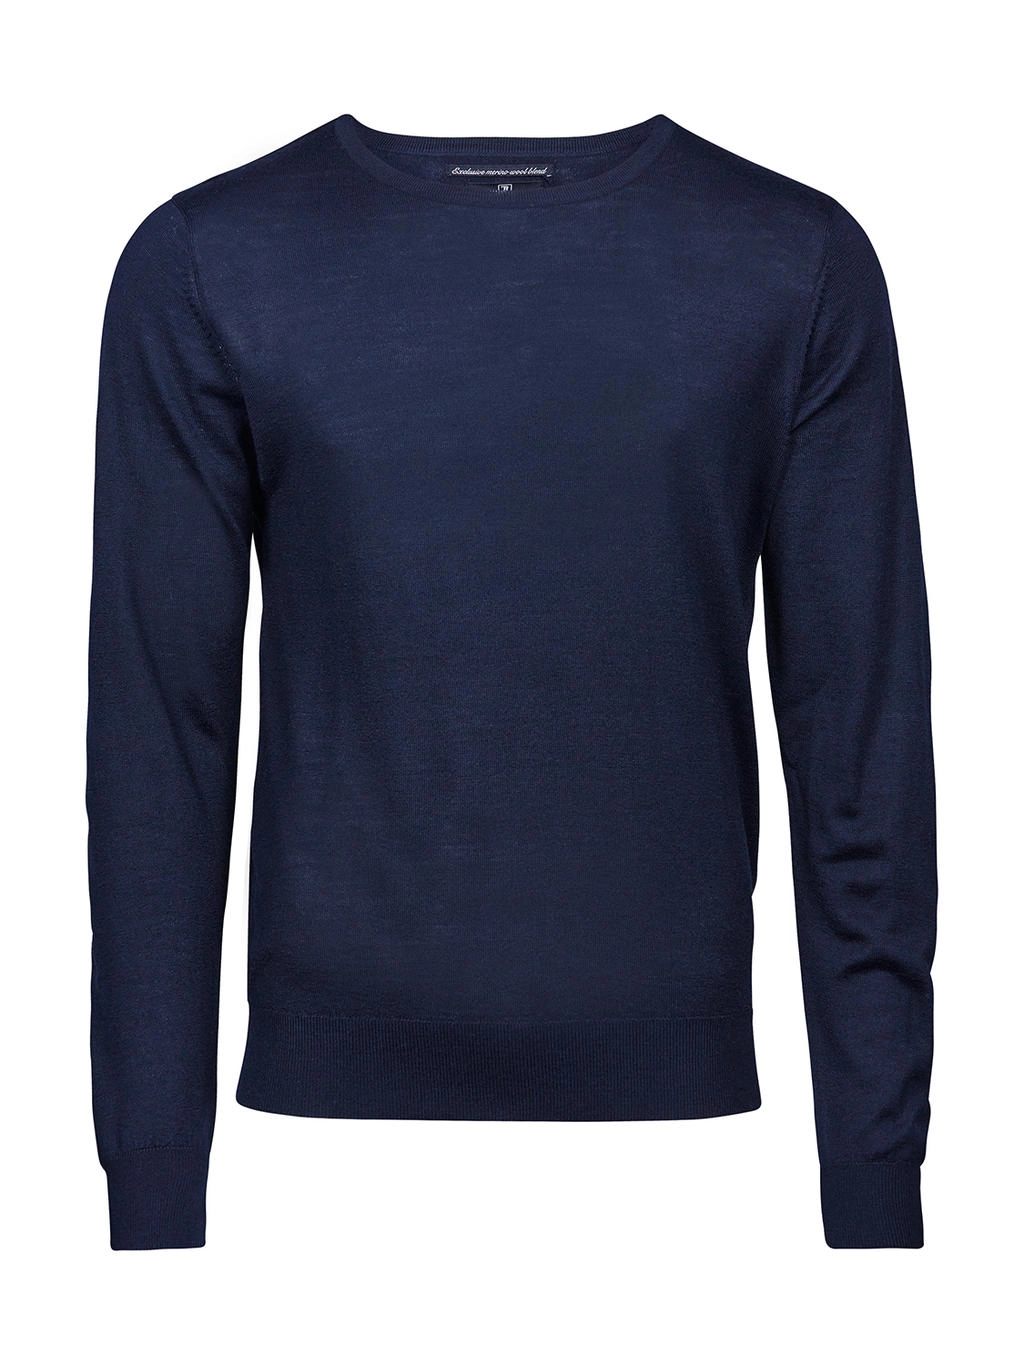 Men`s Crew Neck Sweater zum Besticken und Bedrucken in der Farbe Navy mit Ihren Logo, Schriftzug oder Motiv.